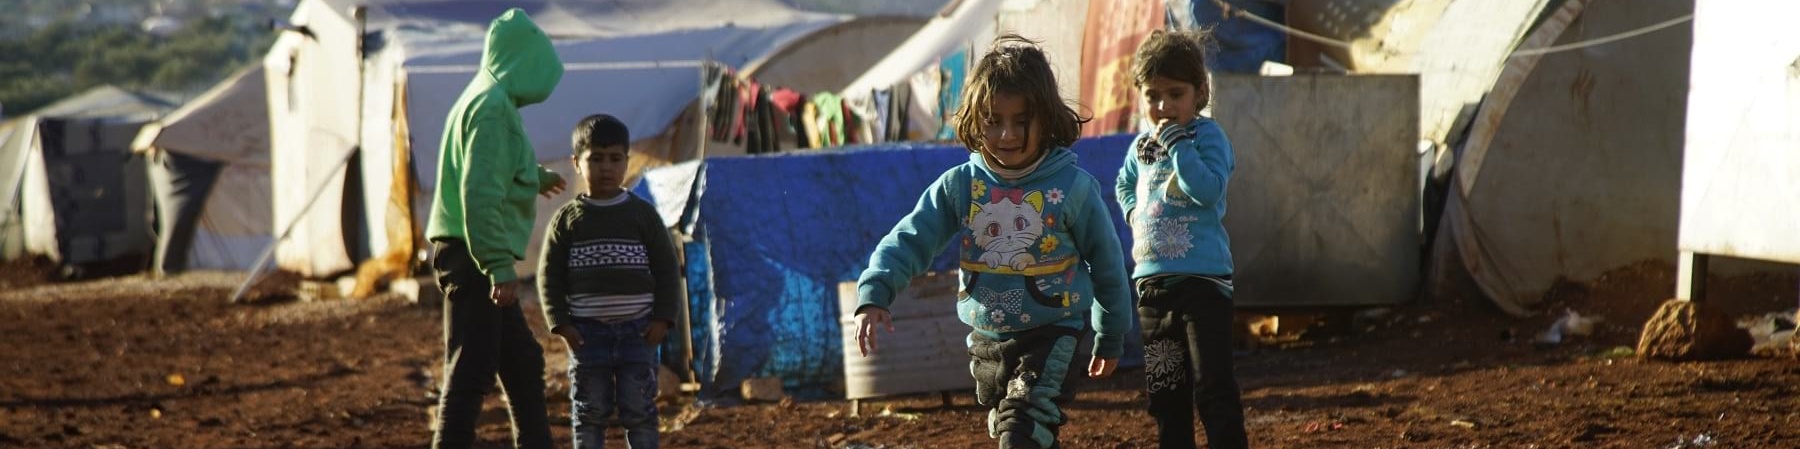 Un gruppo di bambini siriani, quattro in tutto, sono ripresi in piedi da lontano all interno di un campo profughi e su un terreno infangato a causa delle piogge. In particolare, una bambina con stivaletti rosa avanza camminando verso una grande pozzanghera d acqua di fronte a lei.